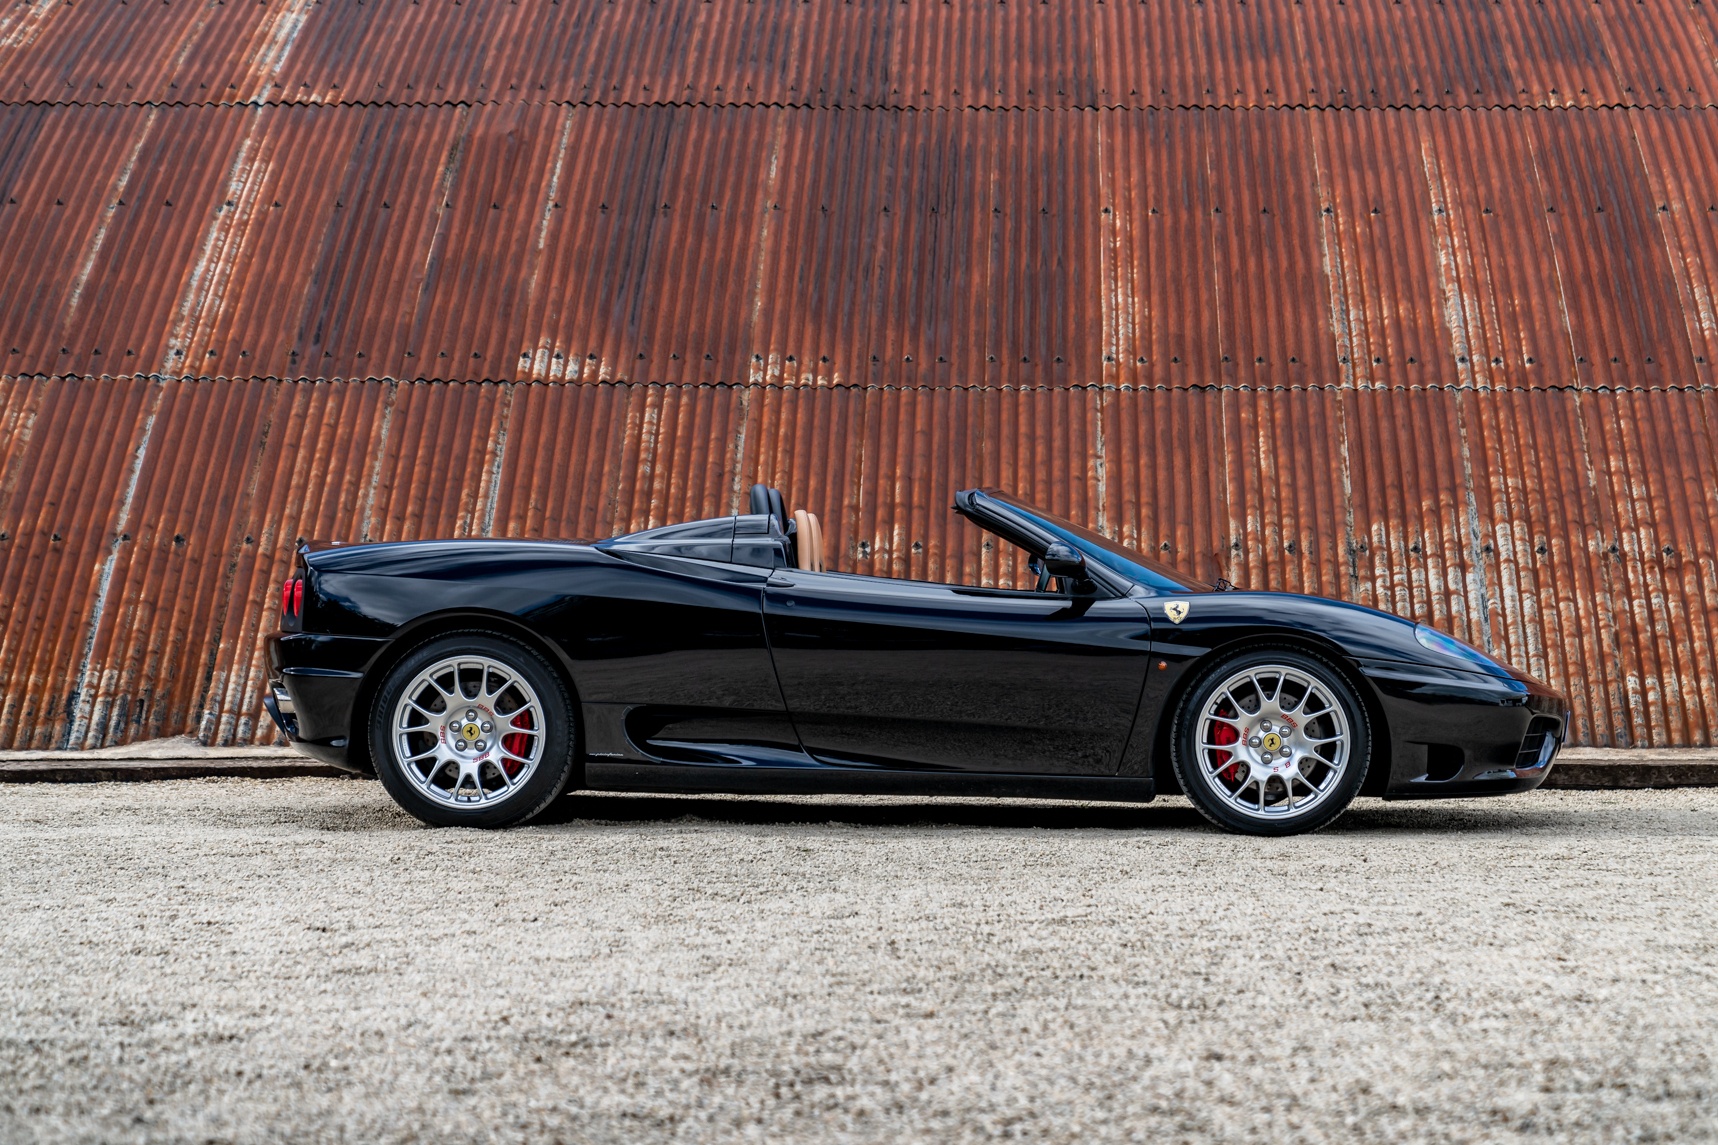 Chi tiết siêu xe Ferrari 360 Spider của David Beckham - ảnh 8